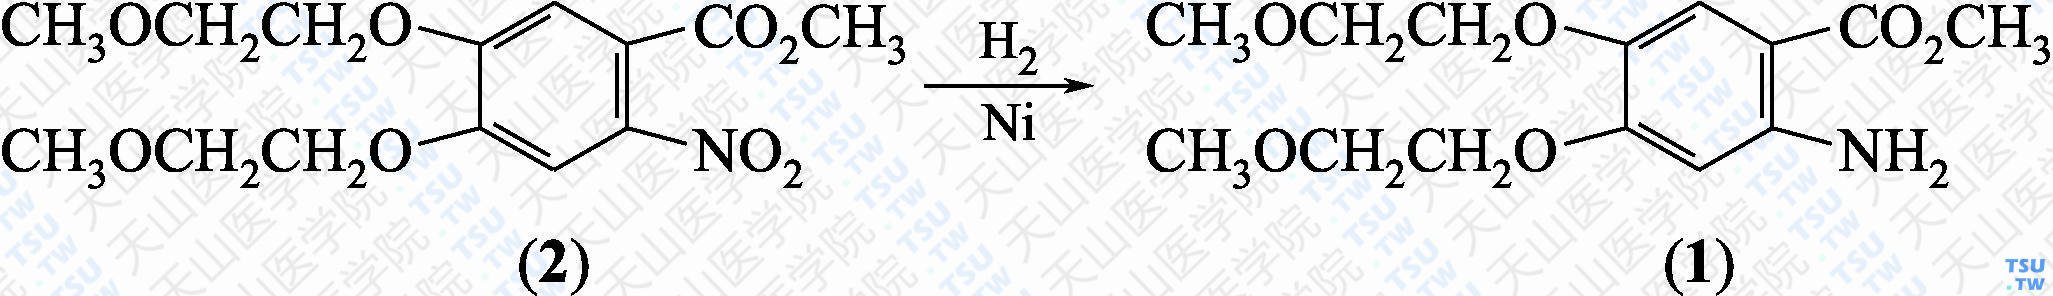 2-氨基-4，5-二-（2-甲氧基乙氧基）-苯甲酸甲酯（分子式：C<sub>14</sub>H<sub>21</sub>NO<sub>6</sub>）的合成方法路线及其结构式